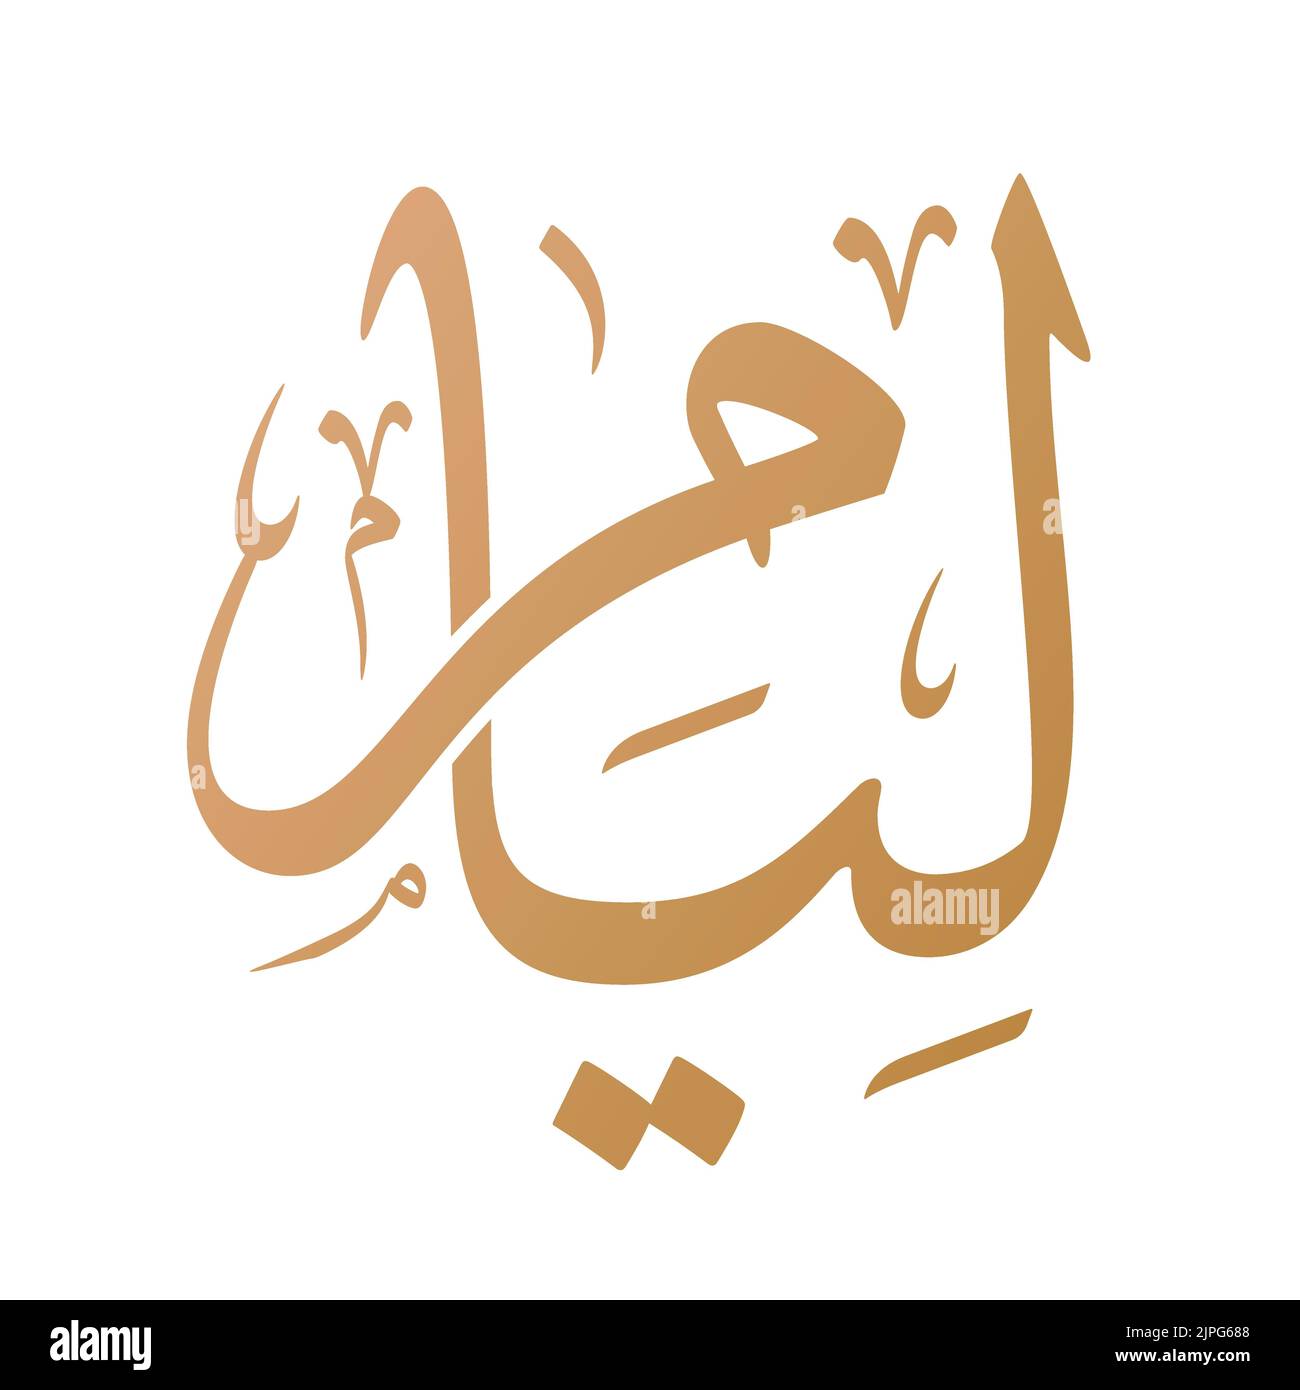 Nom de Liam calligraphie arabe dans le vecteur de script Thuluth. Convient pour collier, tatouage, etc. Traduction: 'liam' Illustration de Vecteur